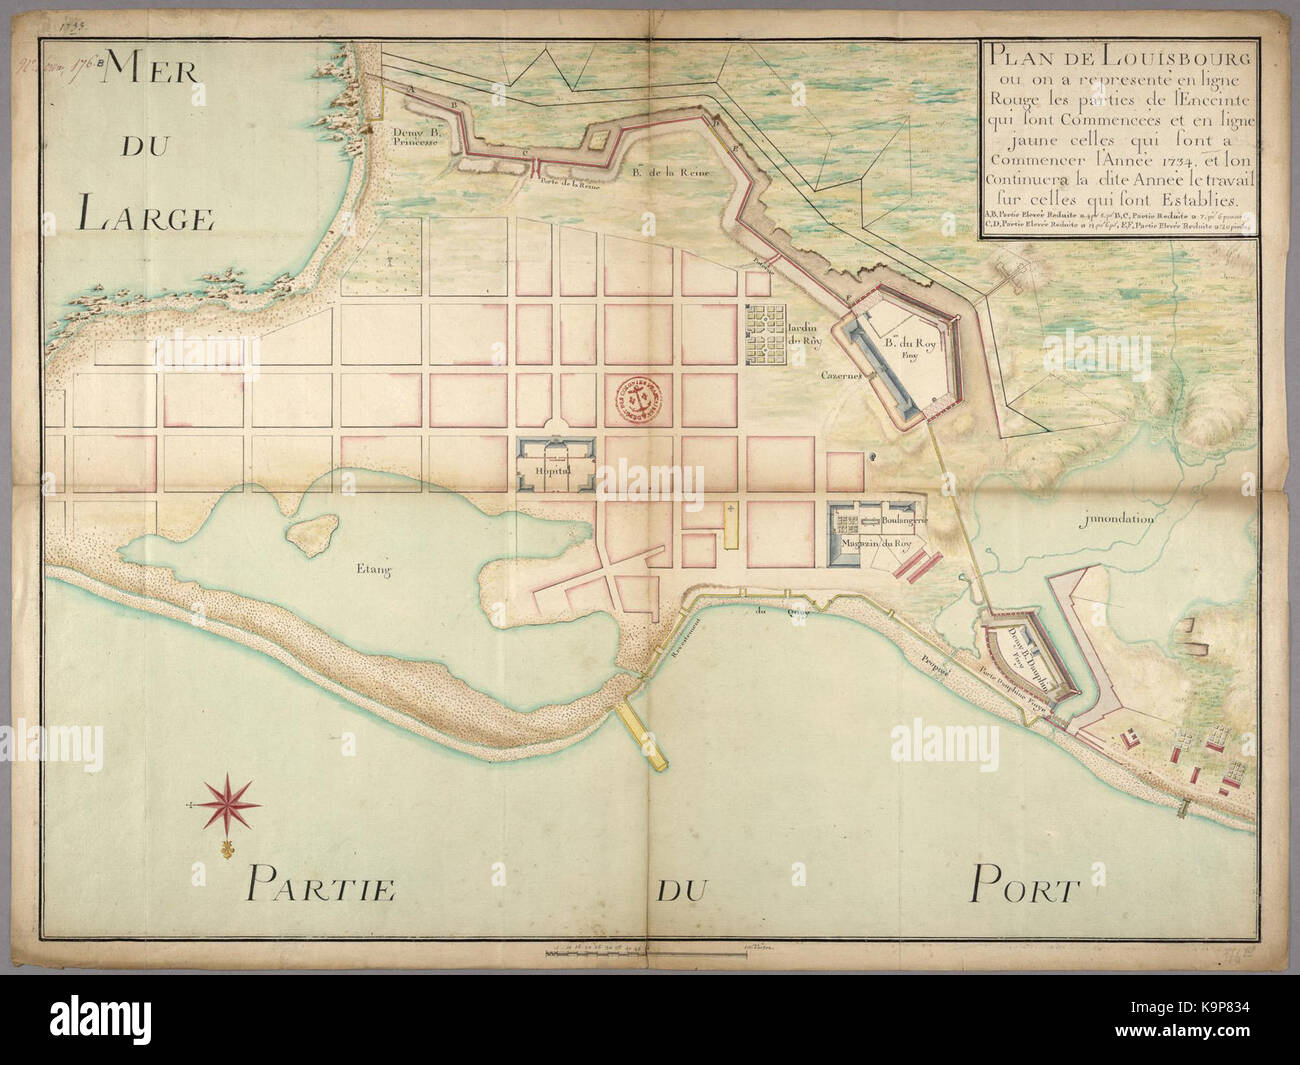 Plan de Louisbourg ou on a represente en ligne rouge les parties de l enceinte qui sont commencees et en ligne jaune celles qui sont a commencer l annee 1734 Stock Photo